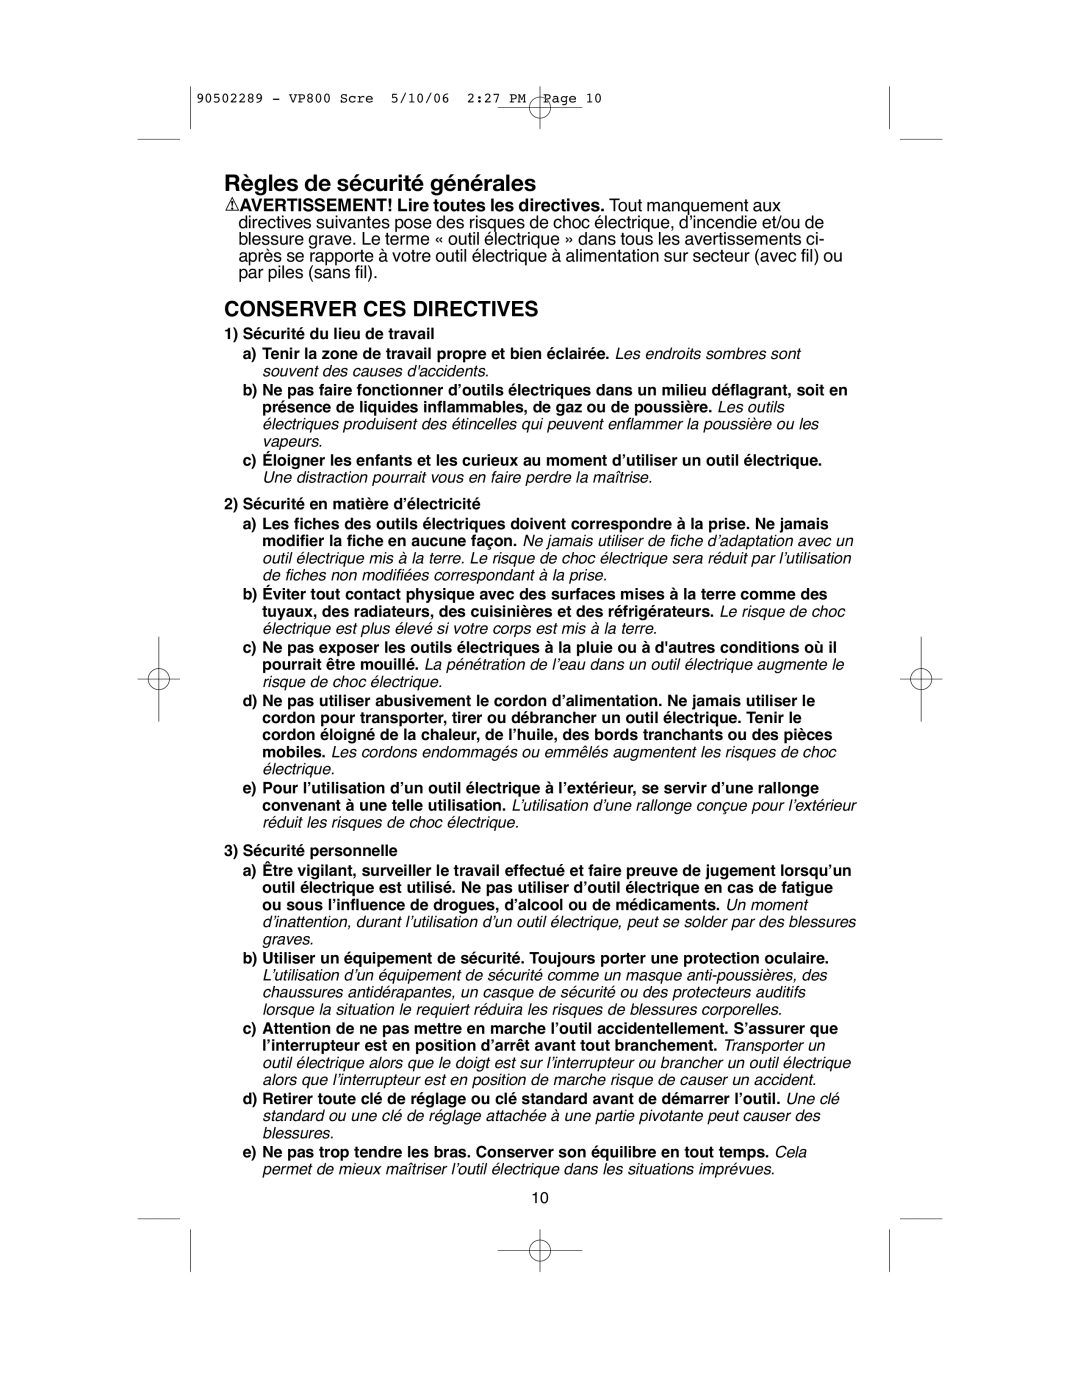 Black & Decker VP800 instruction manual Règles de sécurité générales, Conserver Ces Directives 